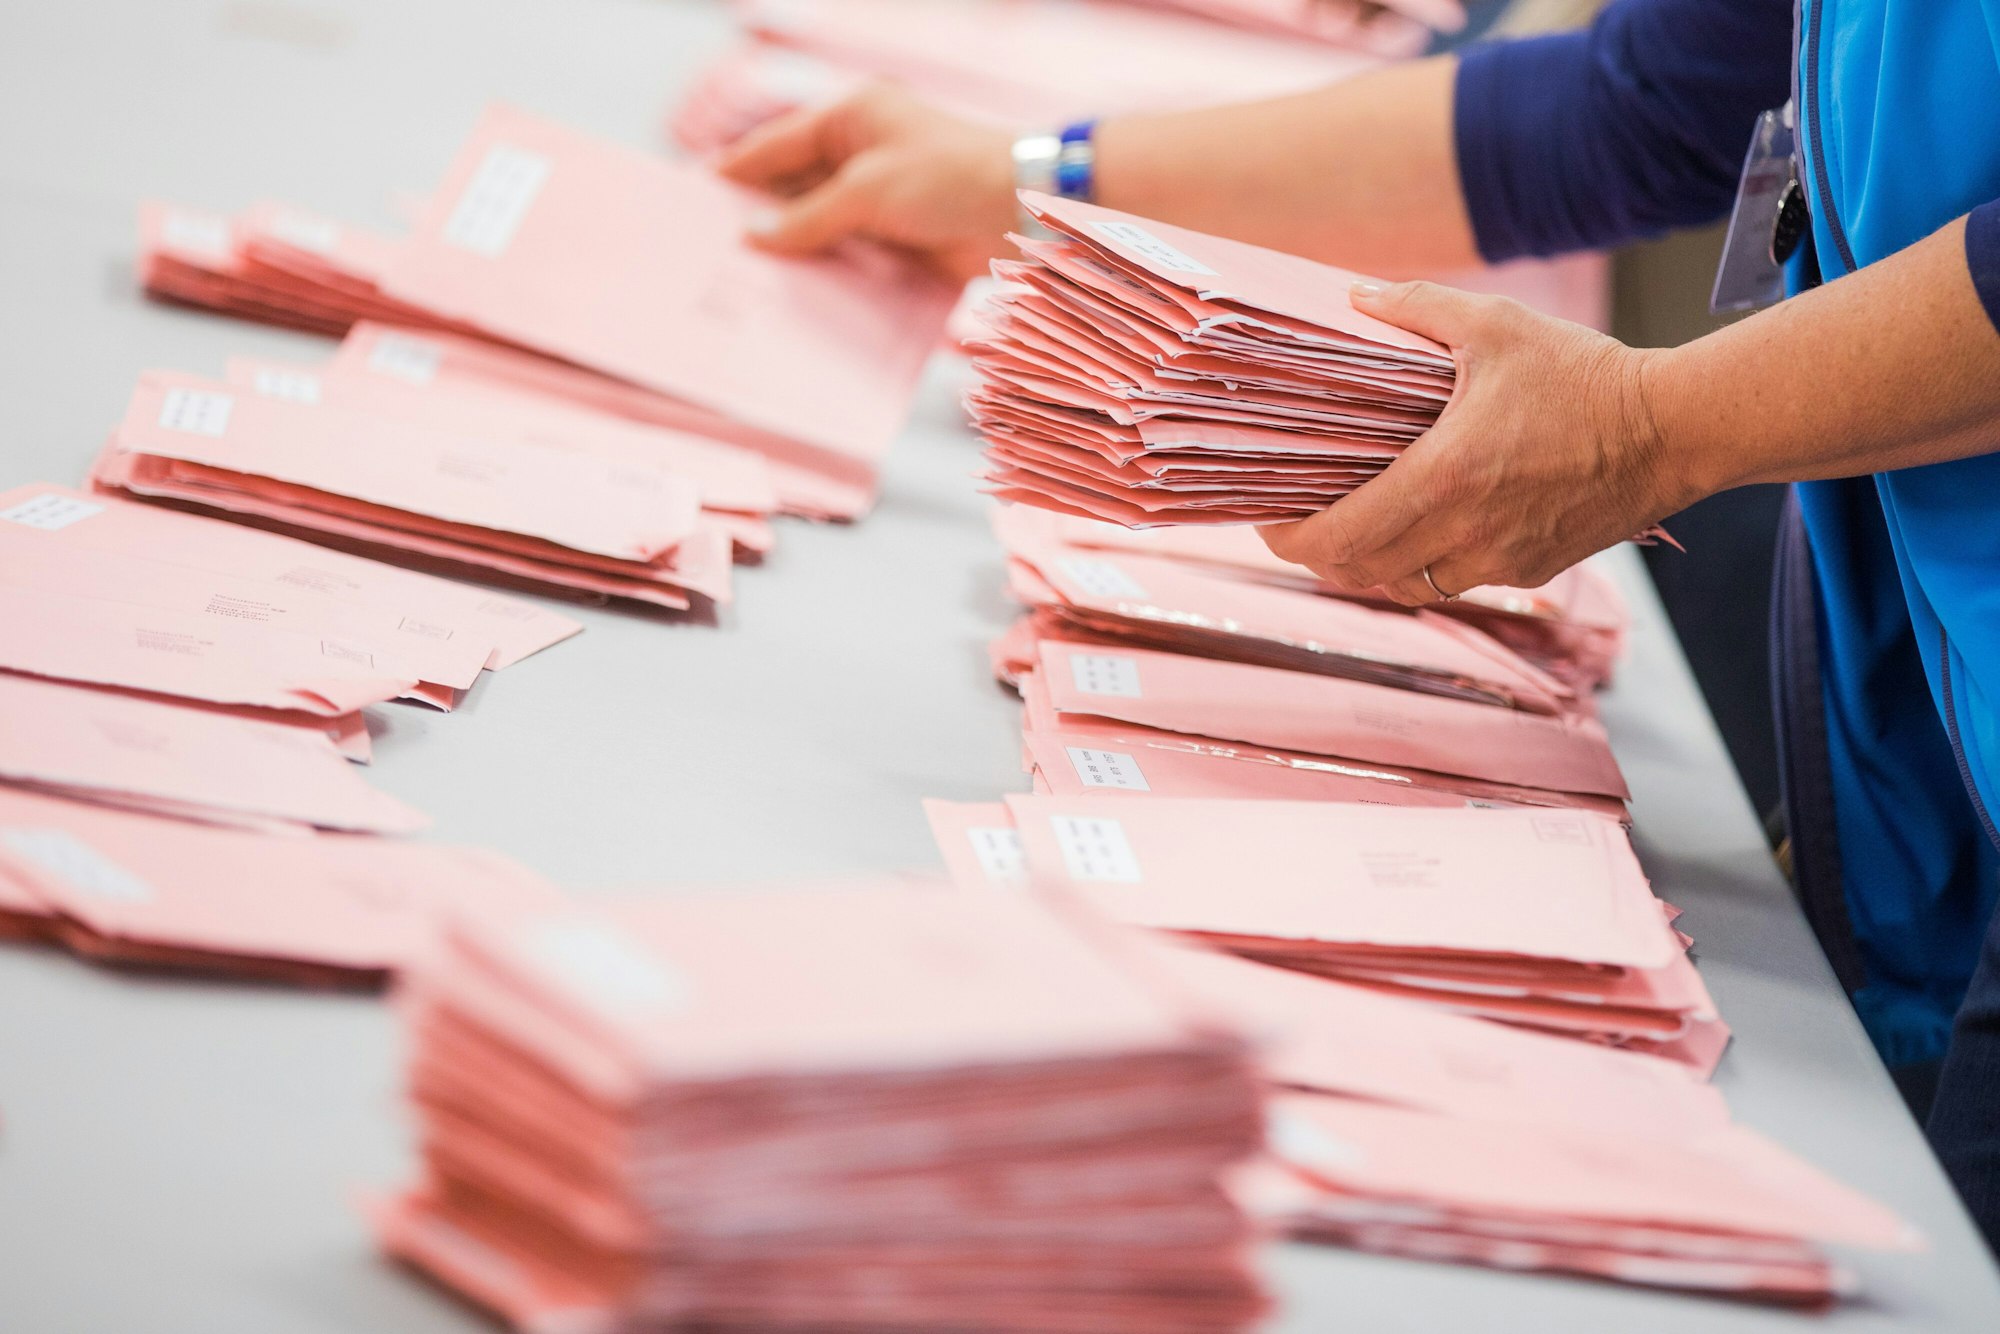 Wahlhelfer in Köln sortieren die roten Wahlbriefe mit den abgegebenen Stimmen für die Bundestagswahl 2017. Bei der diesjährigen Bundestagswahl berichten mehrere Städte über Rekordwerte bei den Briefwahlanträgen.